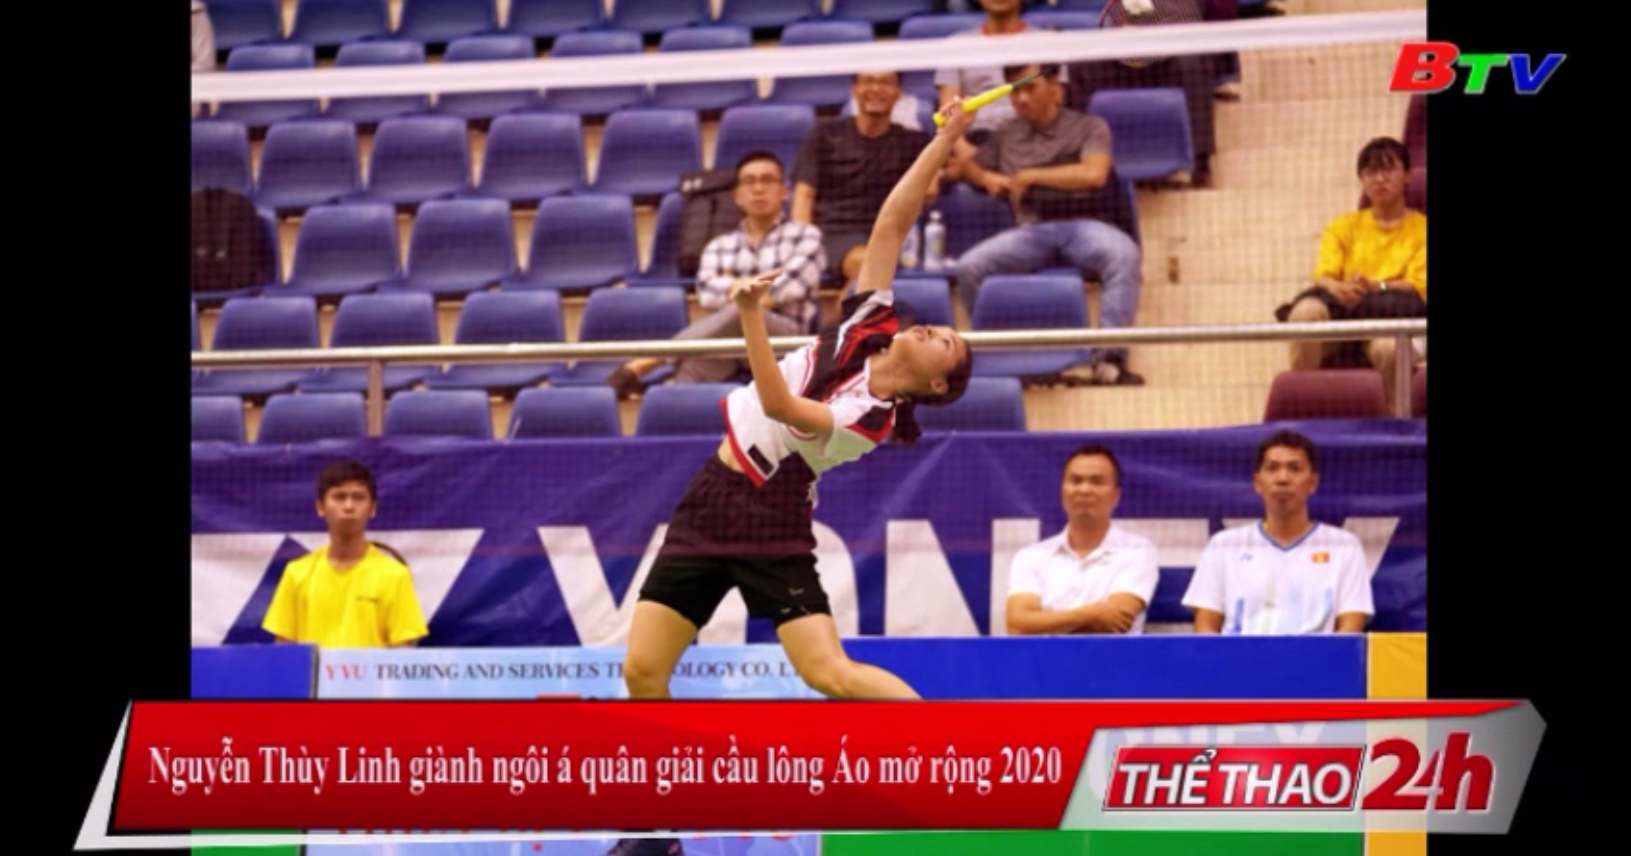 Nguyễn Thùy Linh giành ngôi Á quân Giải cầu lông Áo mở rộng 2020